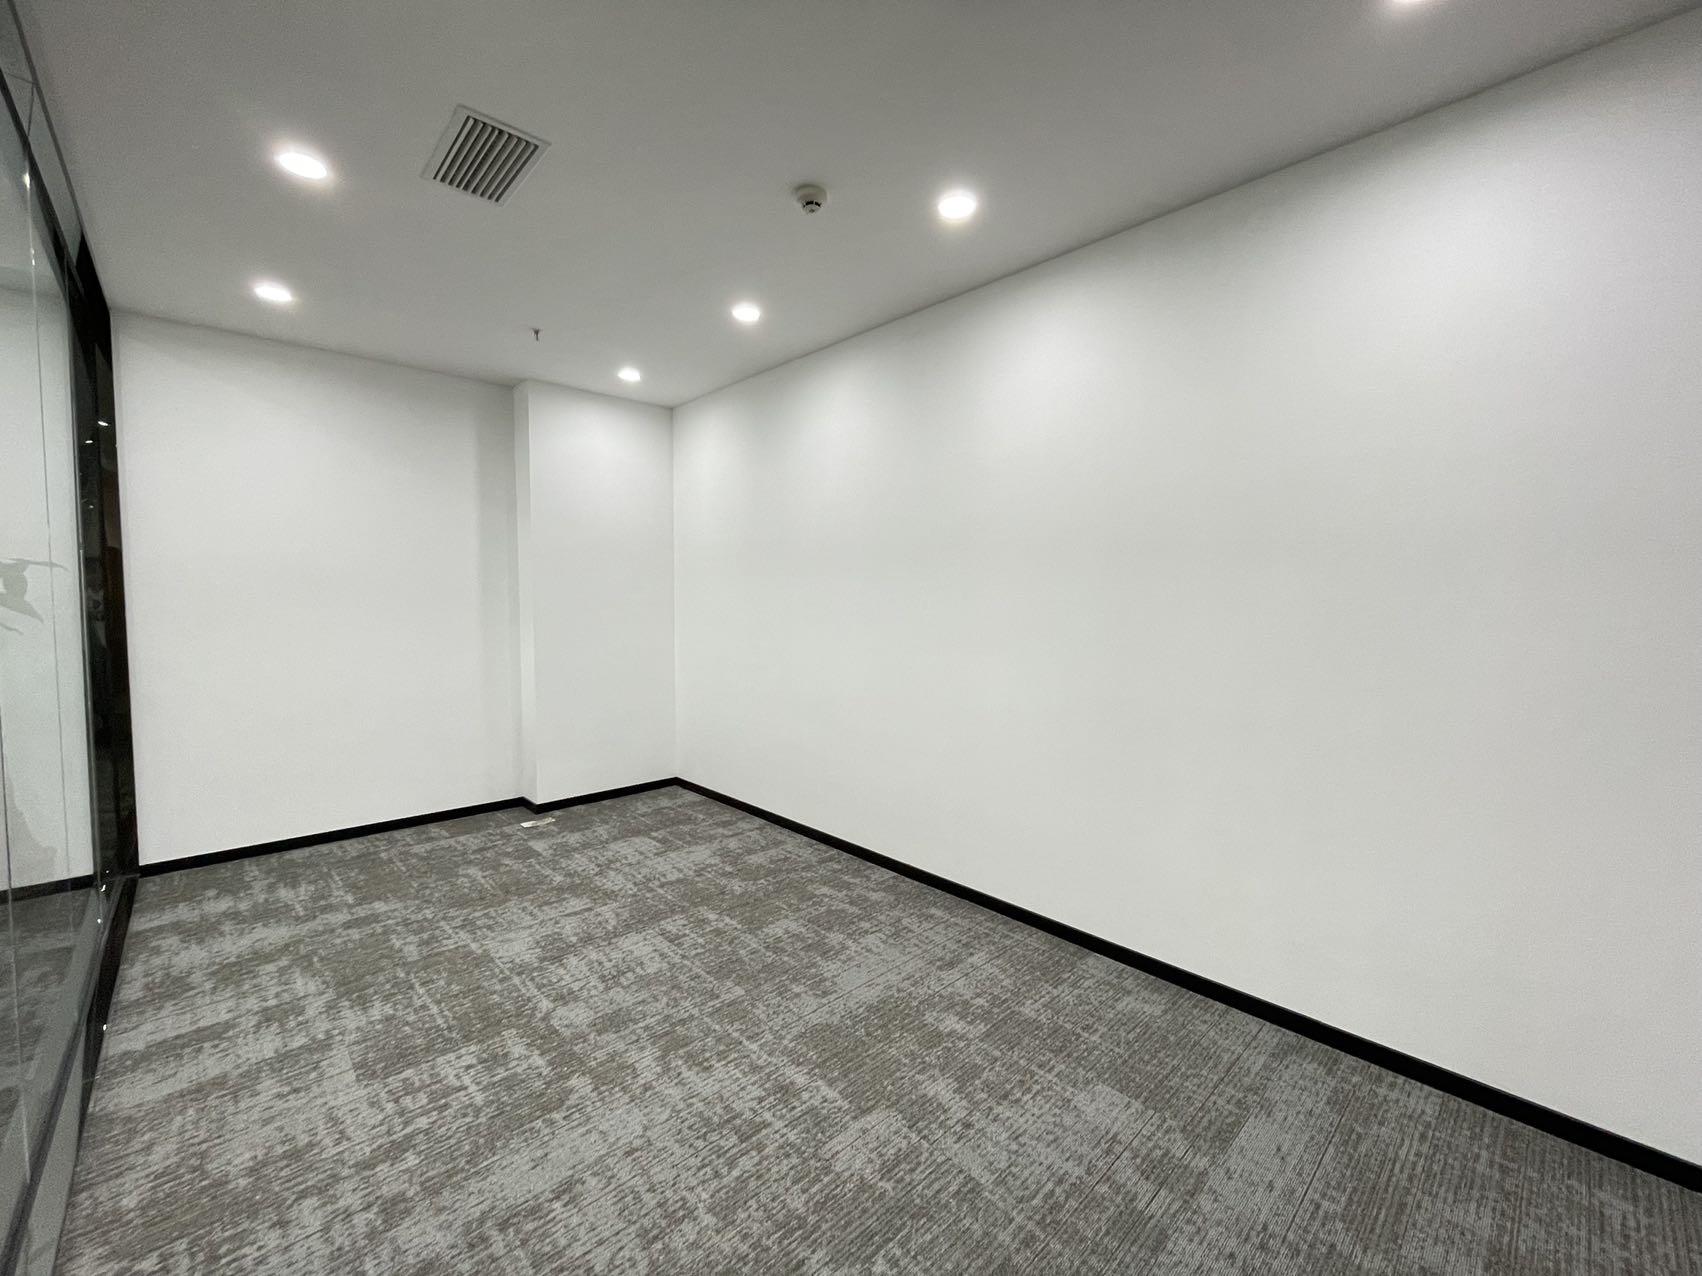 高新区新世纪环球中心338平精装办公室带家具 拎包入住  交通便利 采光通透